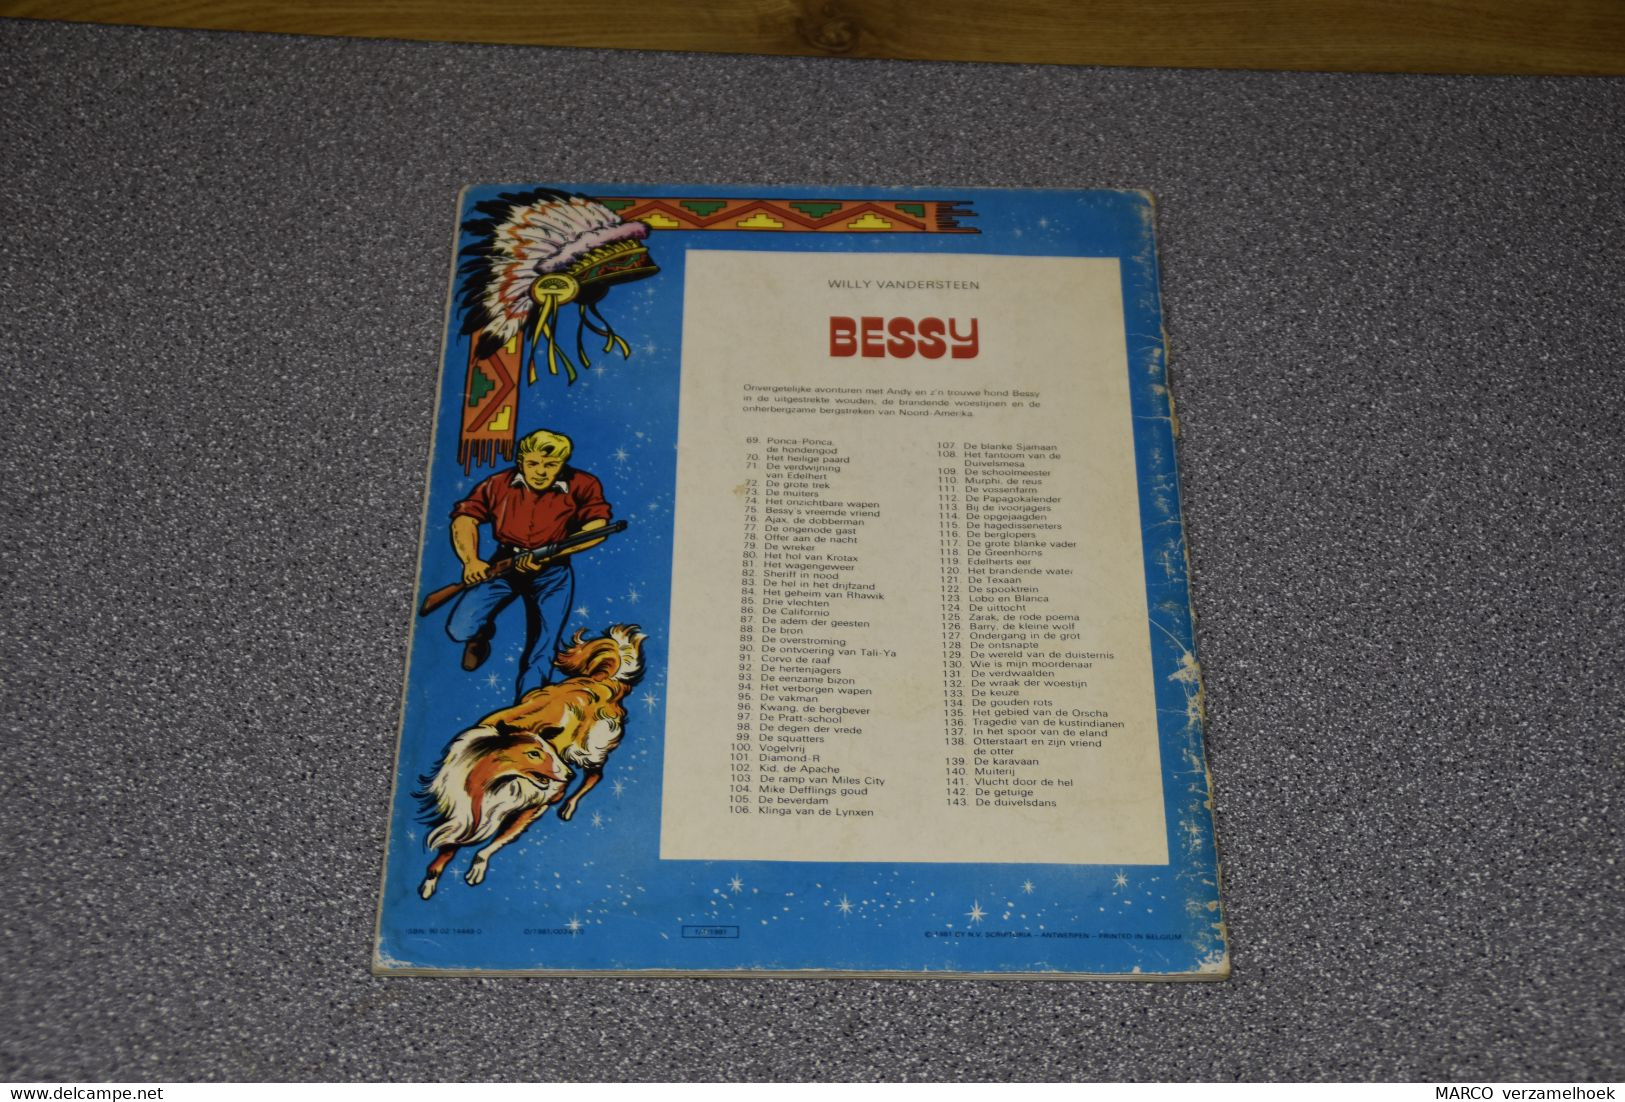 BESSY 143. De Duivelsdans Standaard Uitgeverij Willy Vandersteen 1981 - Bessy